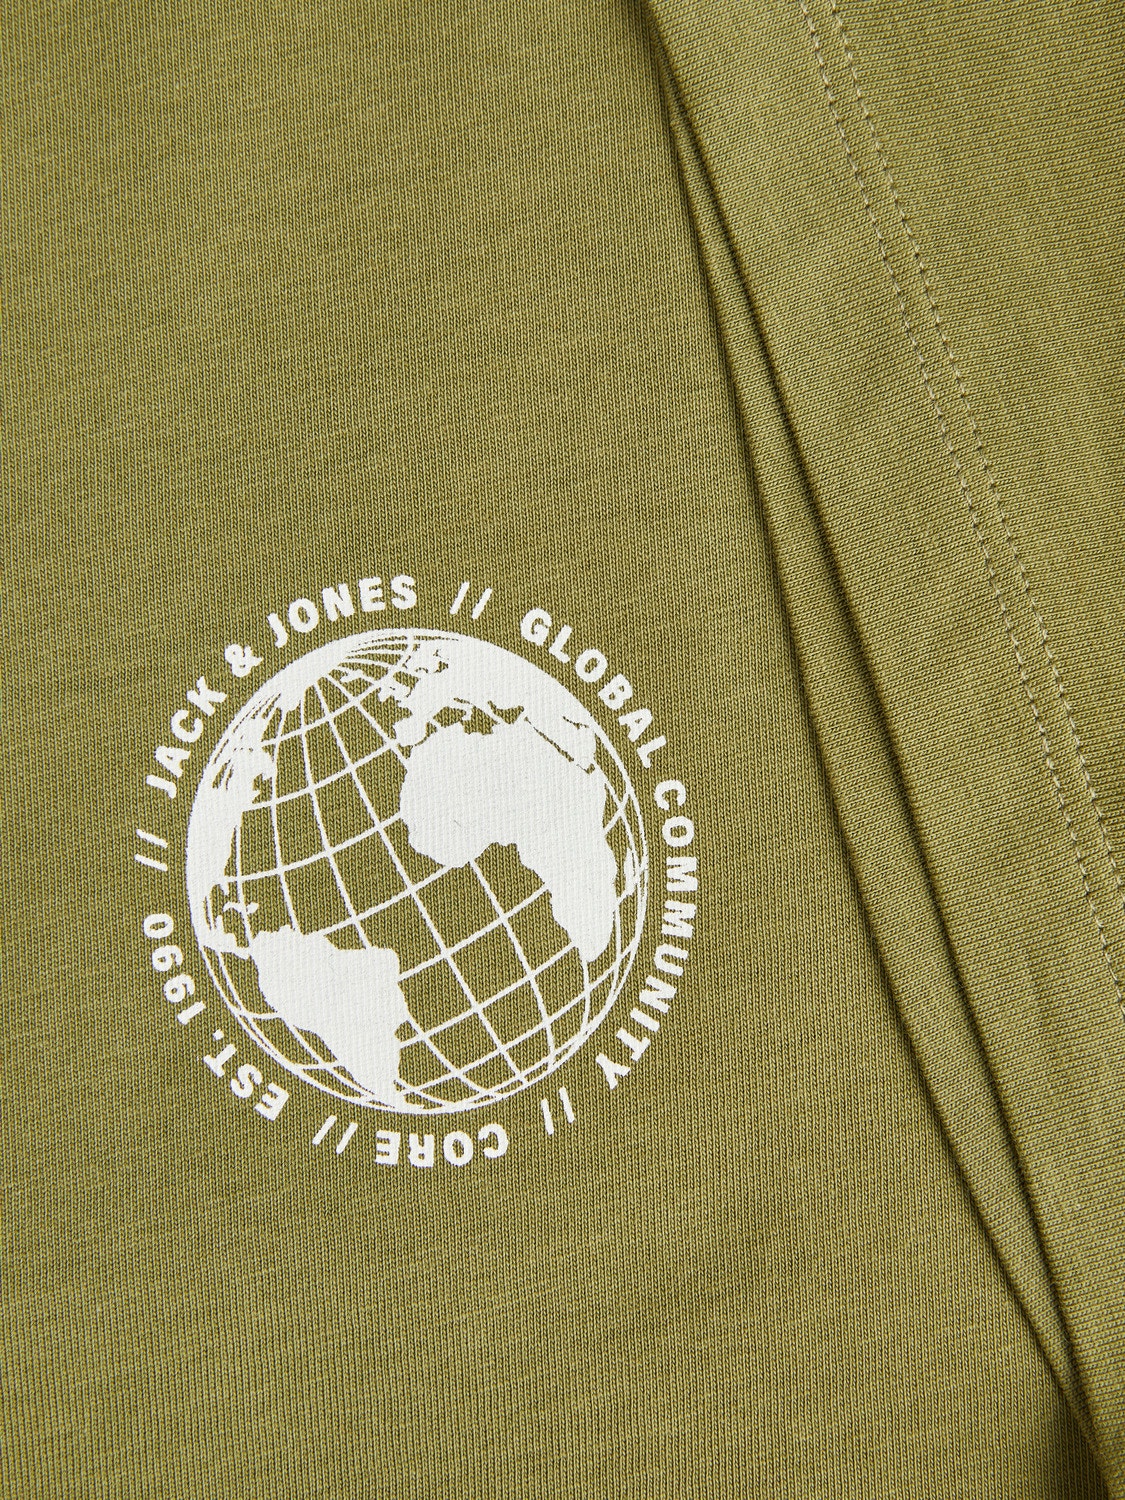 Jack & Jones Gedruckt Rundhals T-shirt -Olive Branch - 12240279